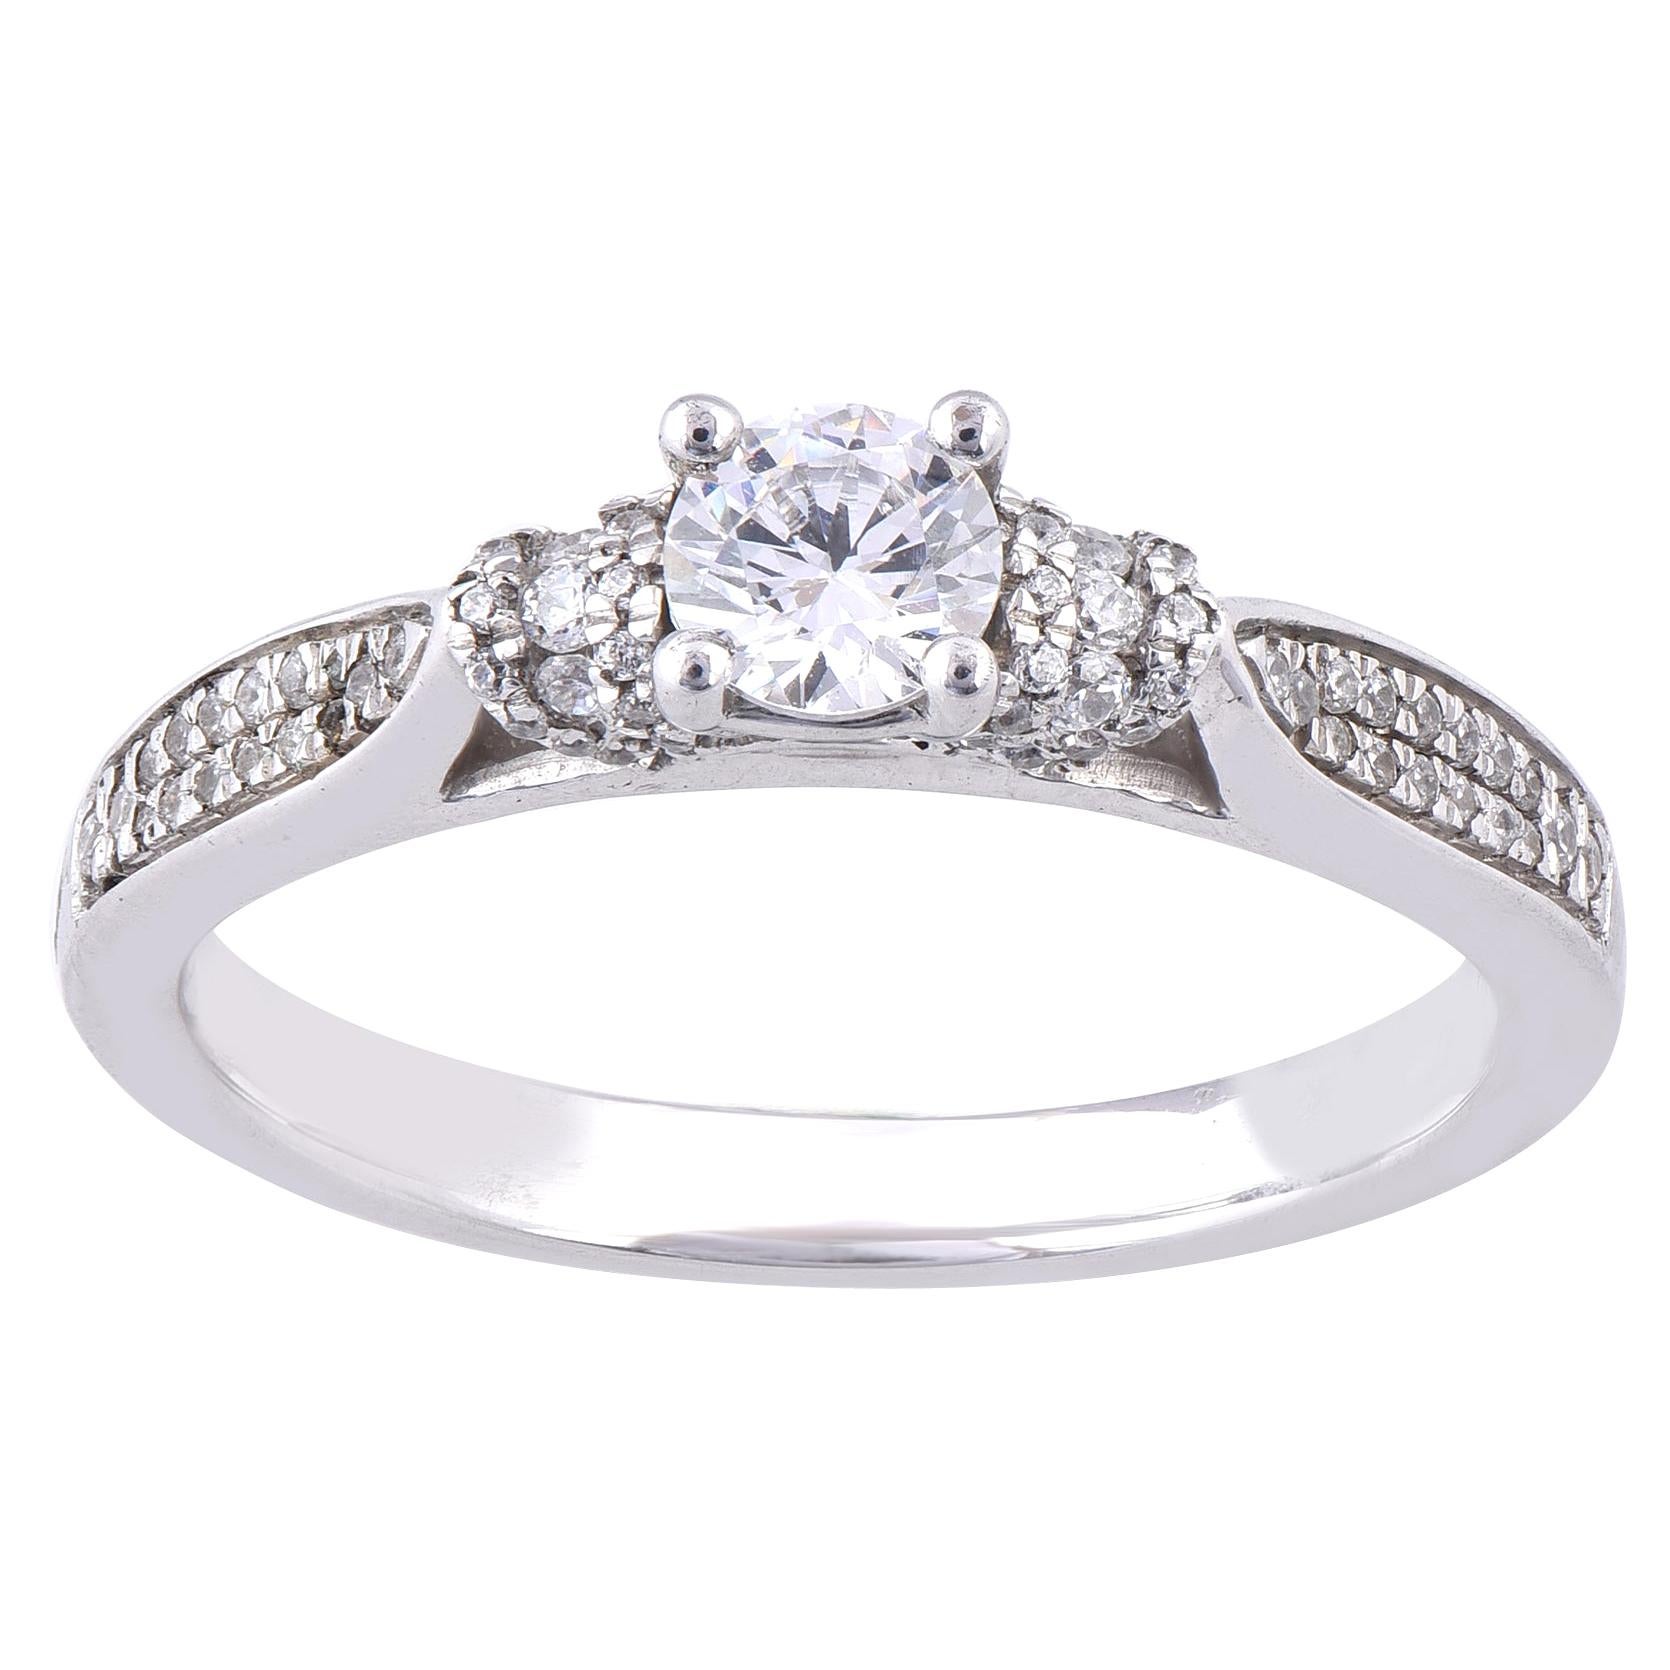 TJD 0.50 Carat Round Diamond 18 Karat White Gold 4 Prong Engagement Ring